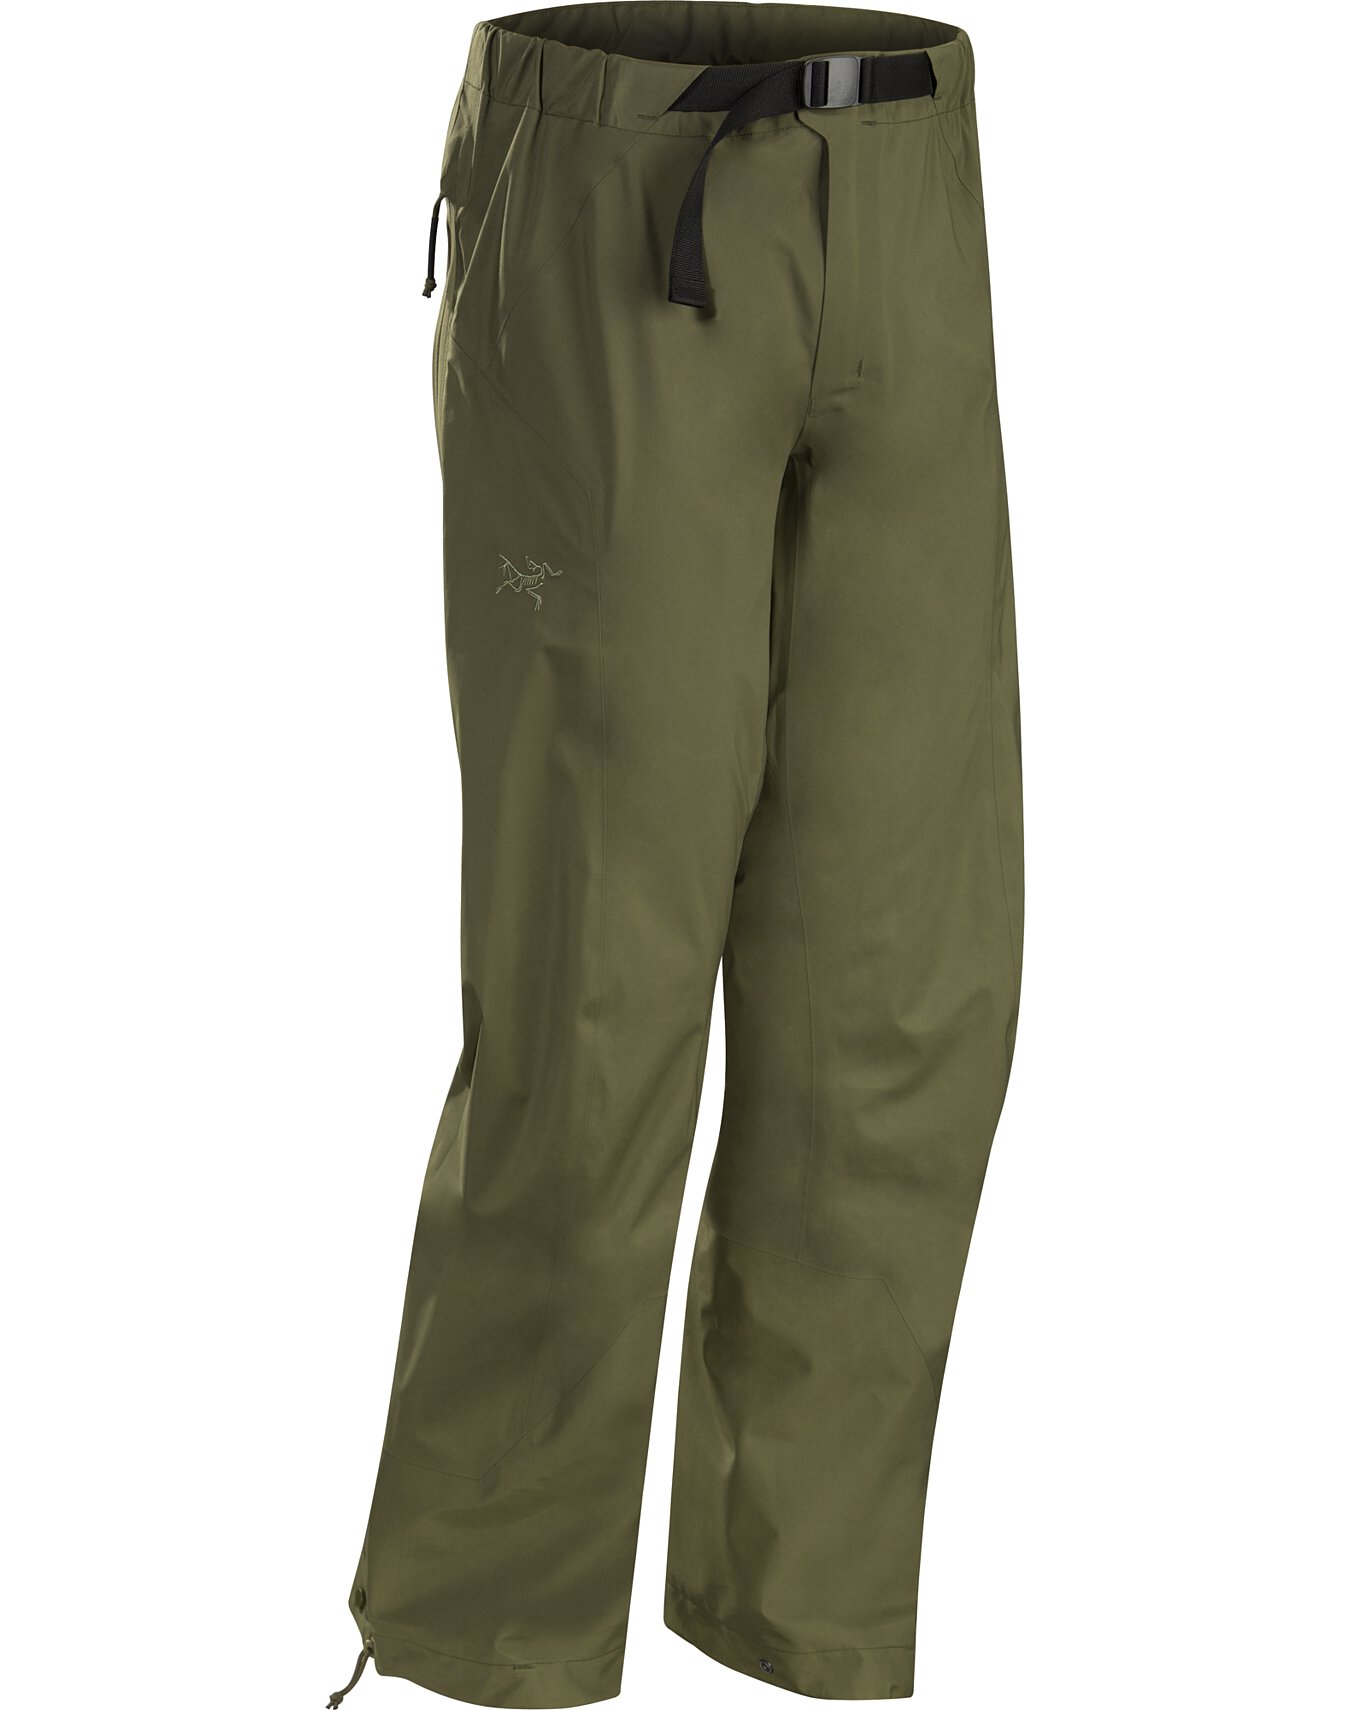 Alpha Pant LT Gen 2 Ranger Green, Medium Short